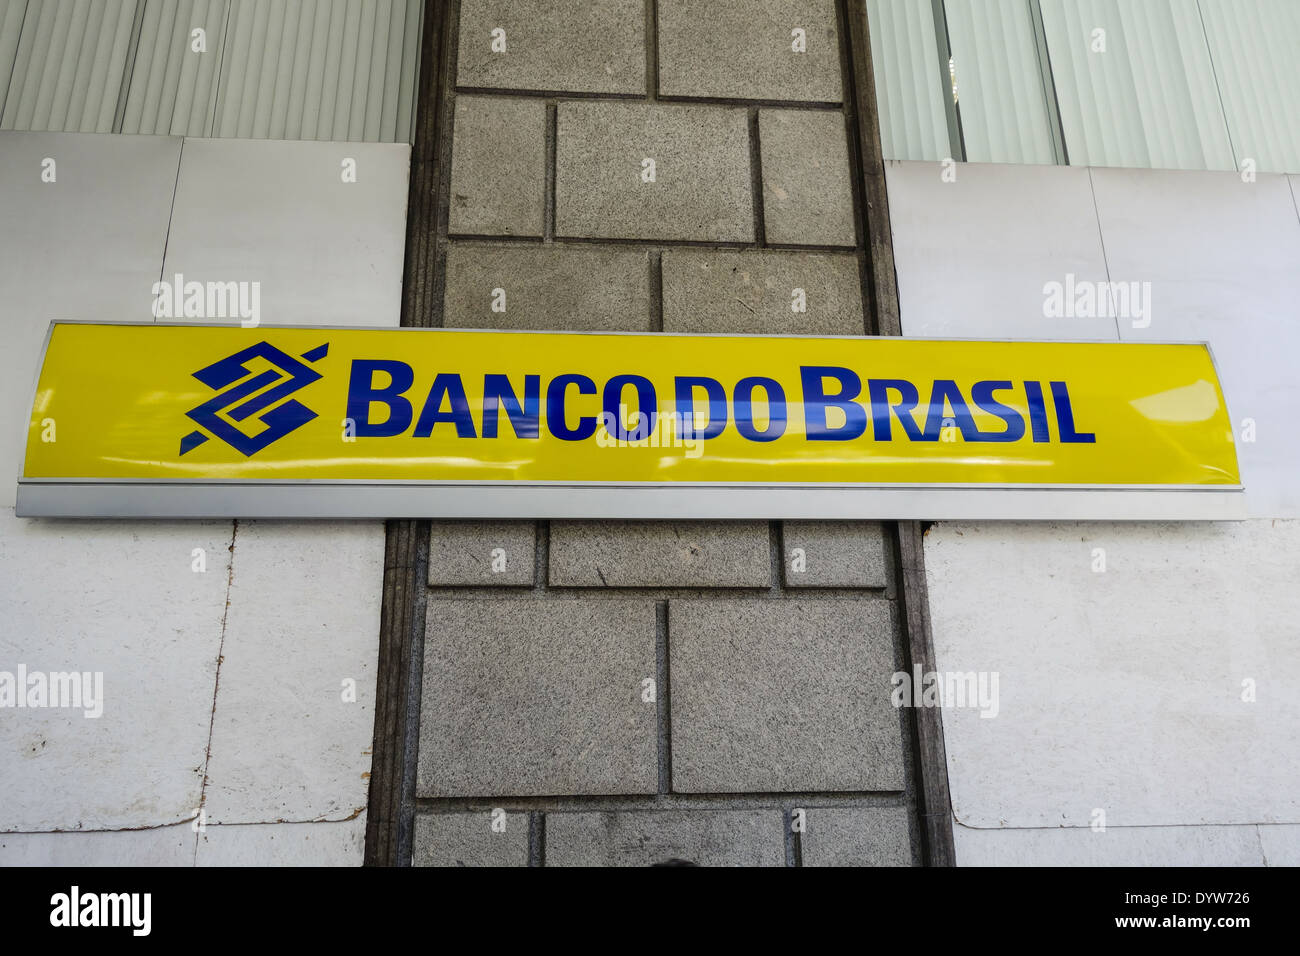 Rio de Janeiro, Centro, Av. Presidente Vargas, Banco do Brasil, Brazil Stock Photo